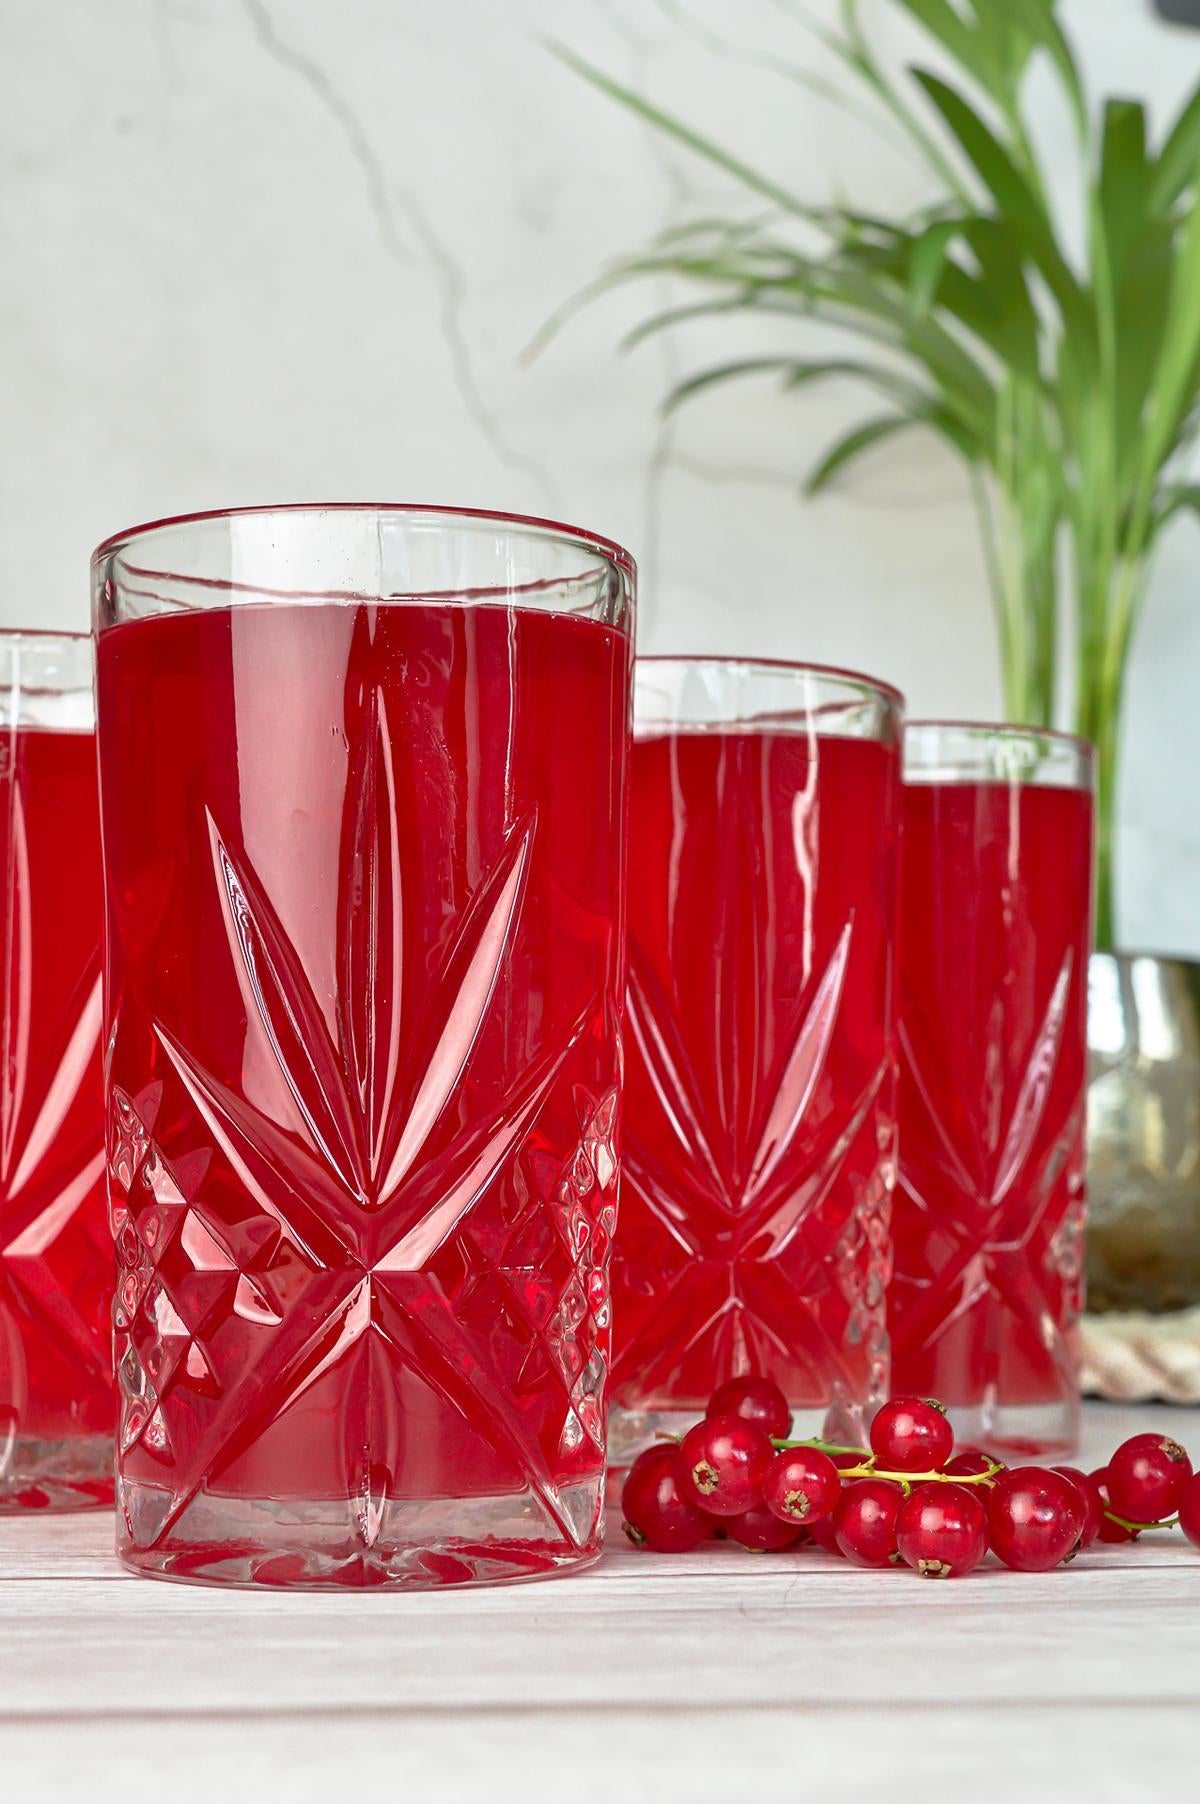 6 verres à long drink 300 ml avec verres à eau en relief verres à jus verres à boire verres à cocktail